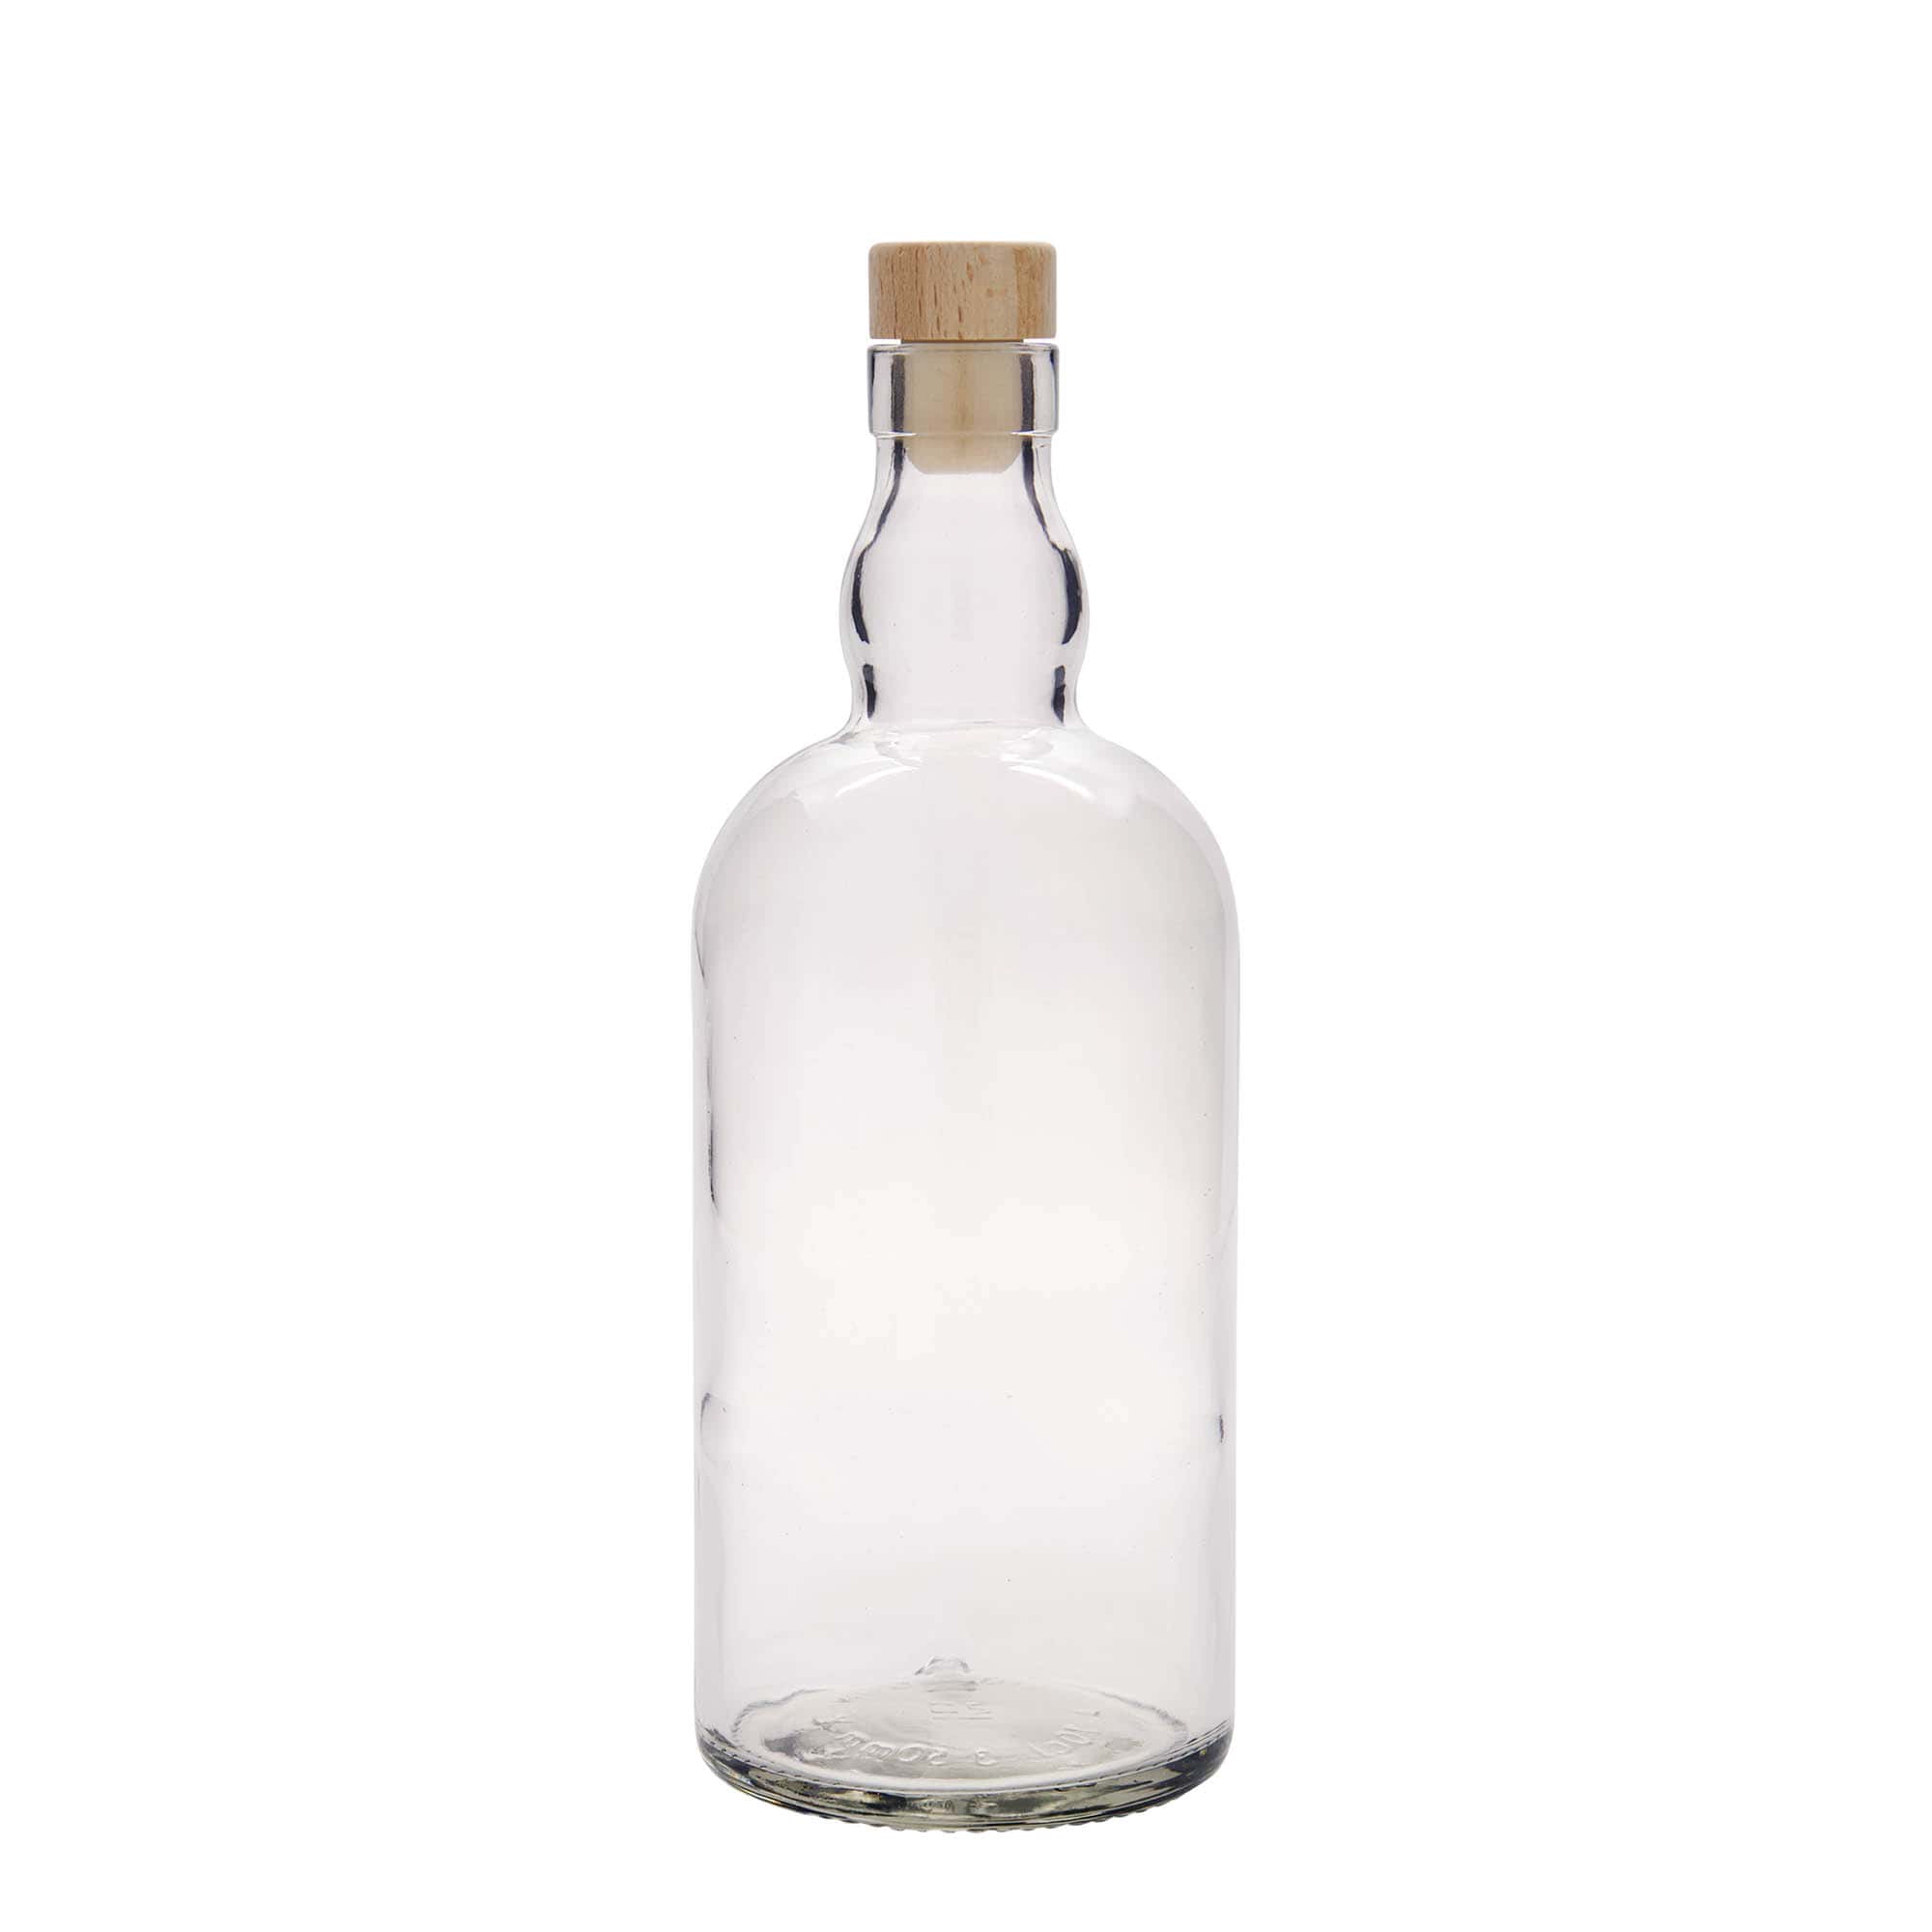 700 ml glass bottle 'Aberdeen', closure: cork